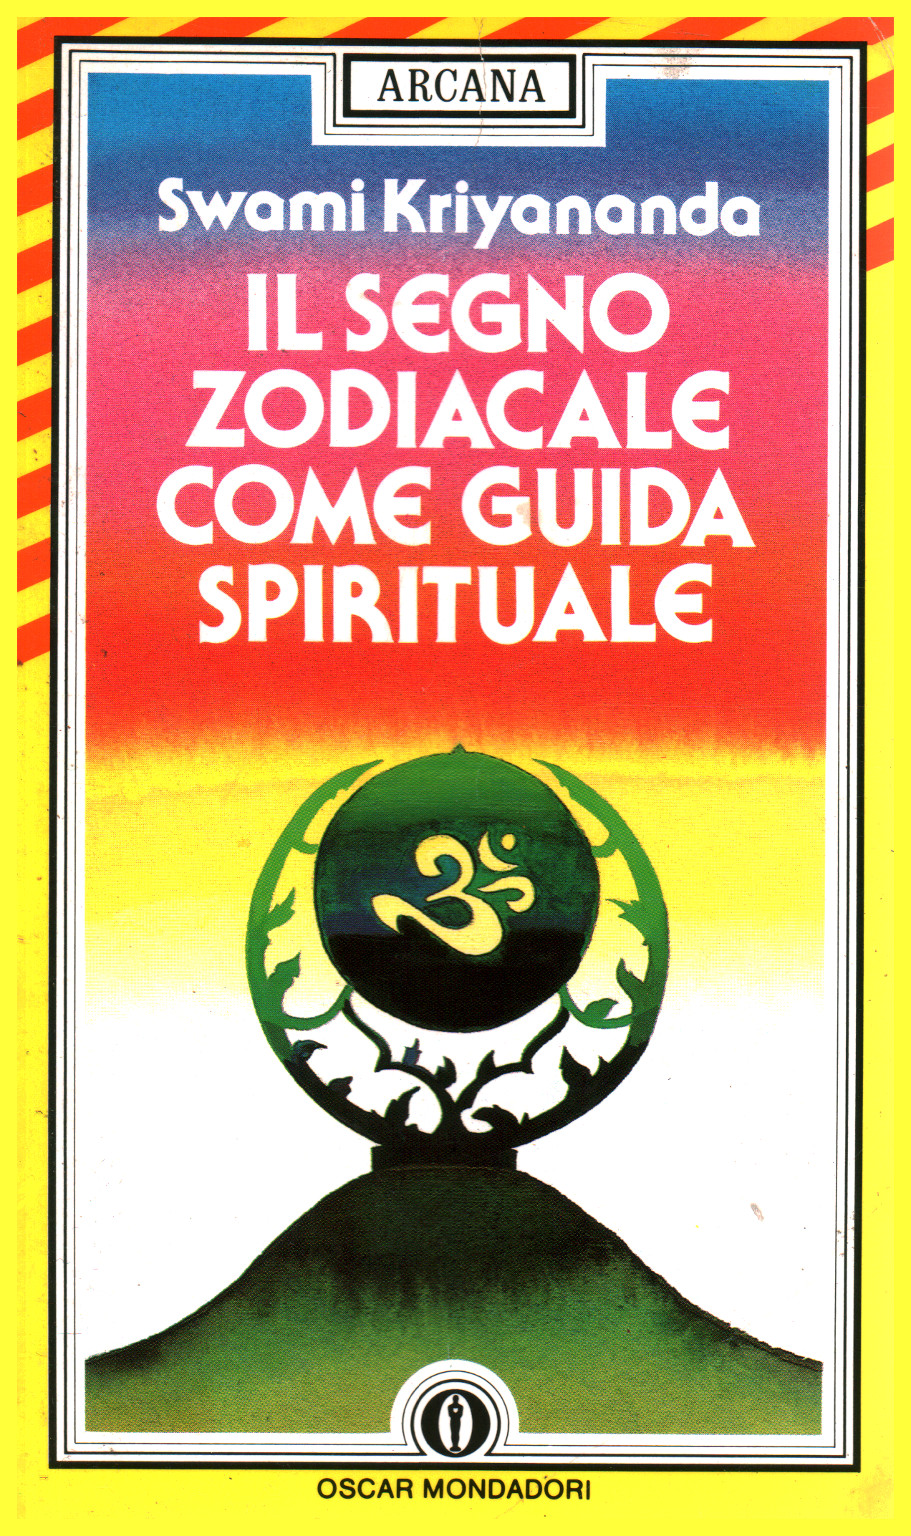 Il segno zodiacale come guida spirituale, s.a.